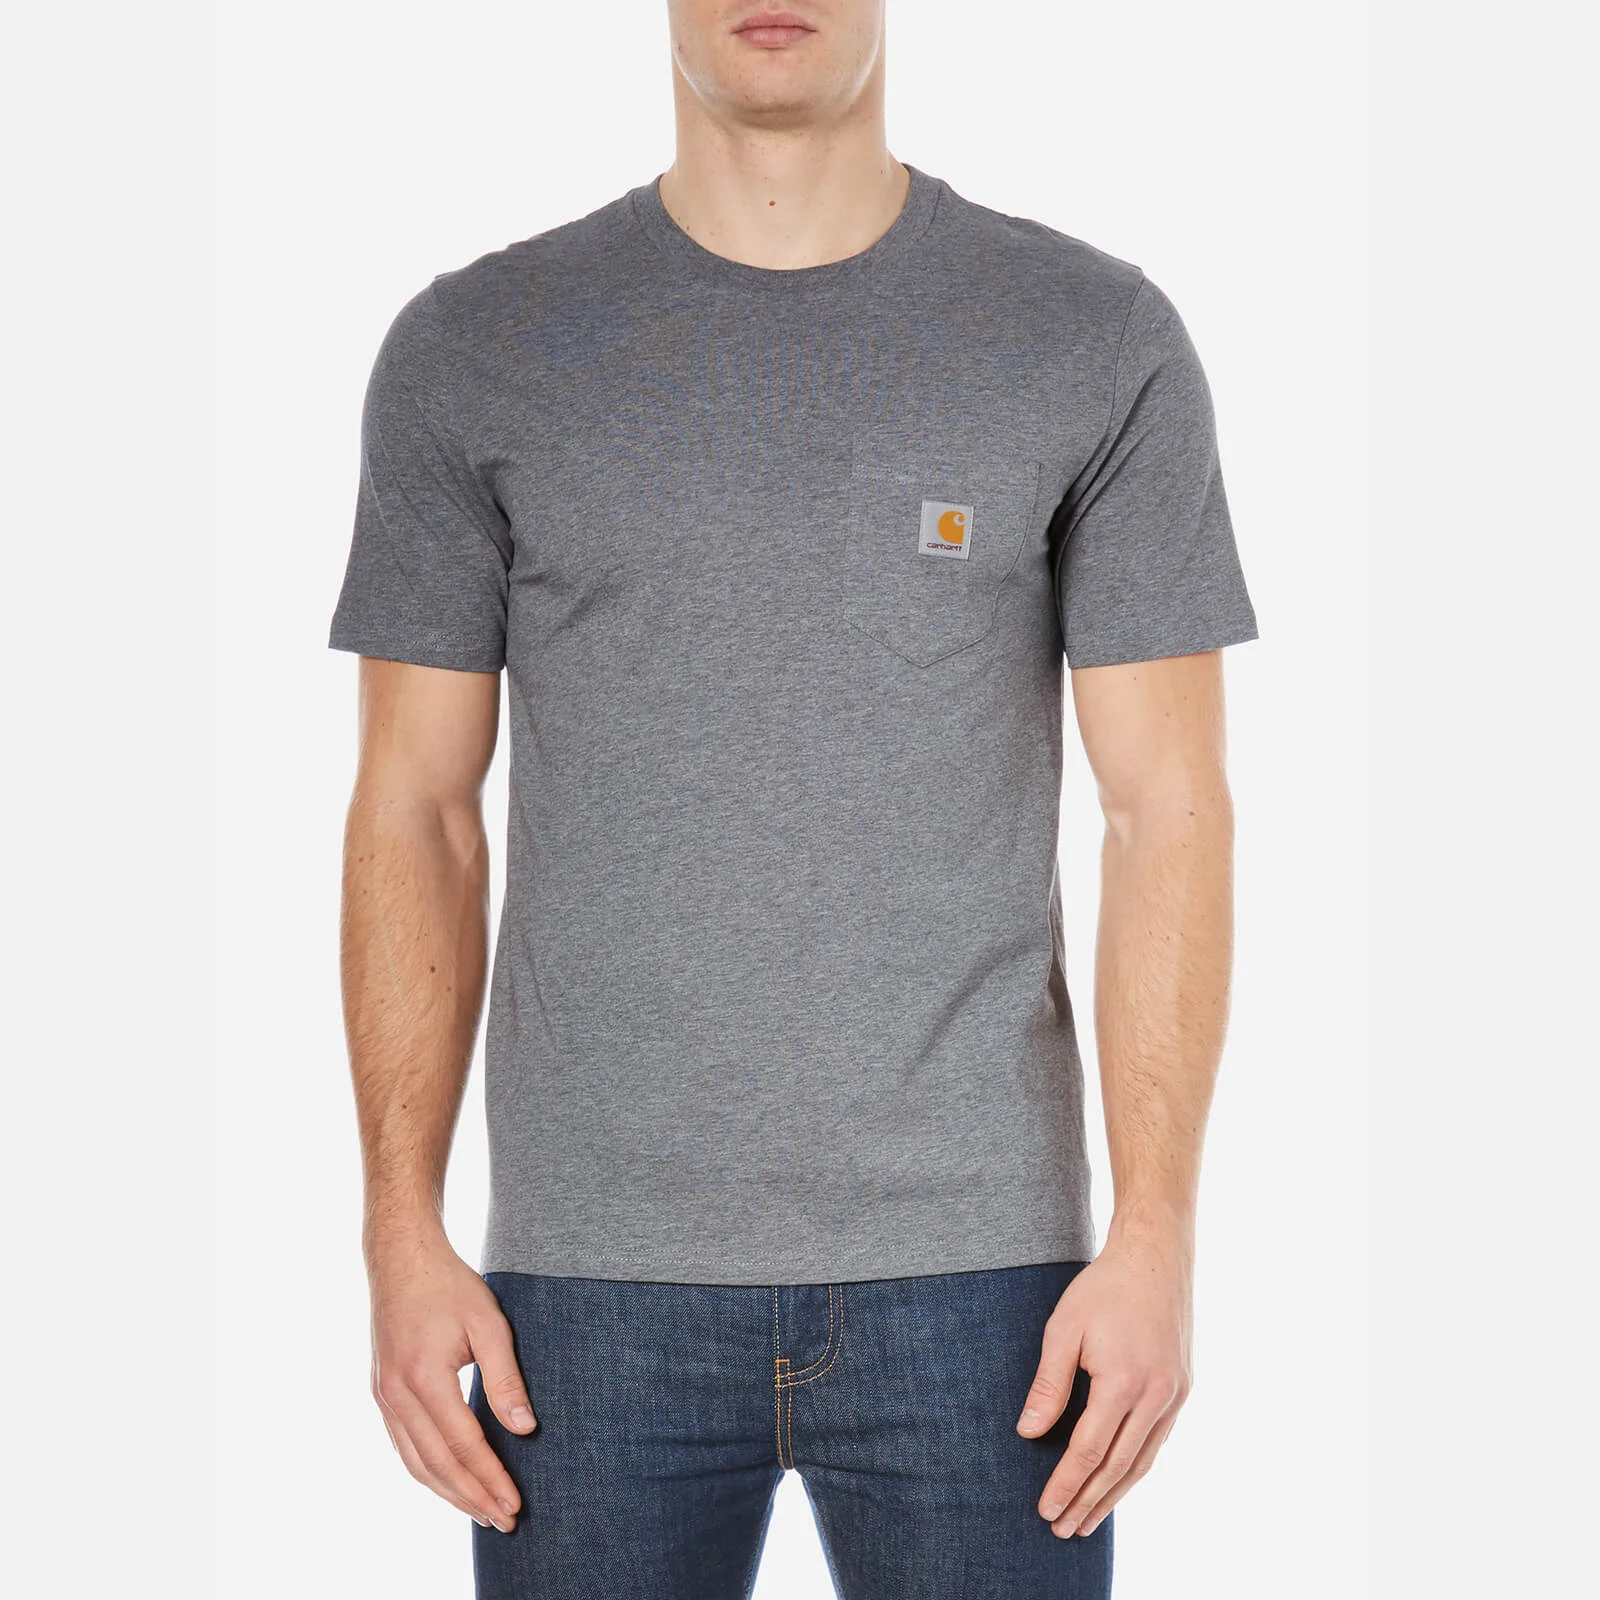 Carhartt Men's Short Sleeve Pocket T-Shirt - Grey Image 1